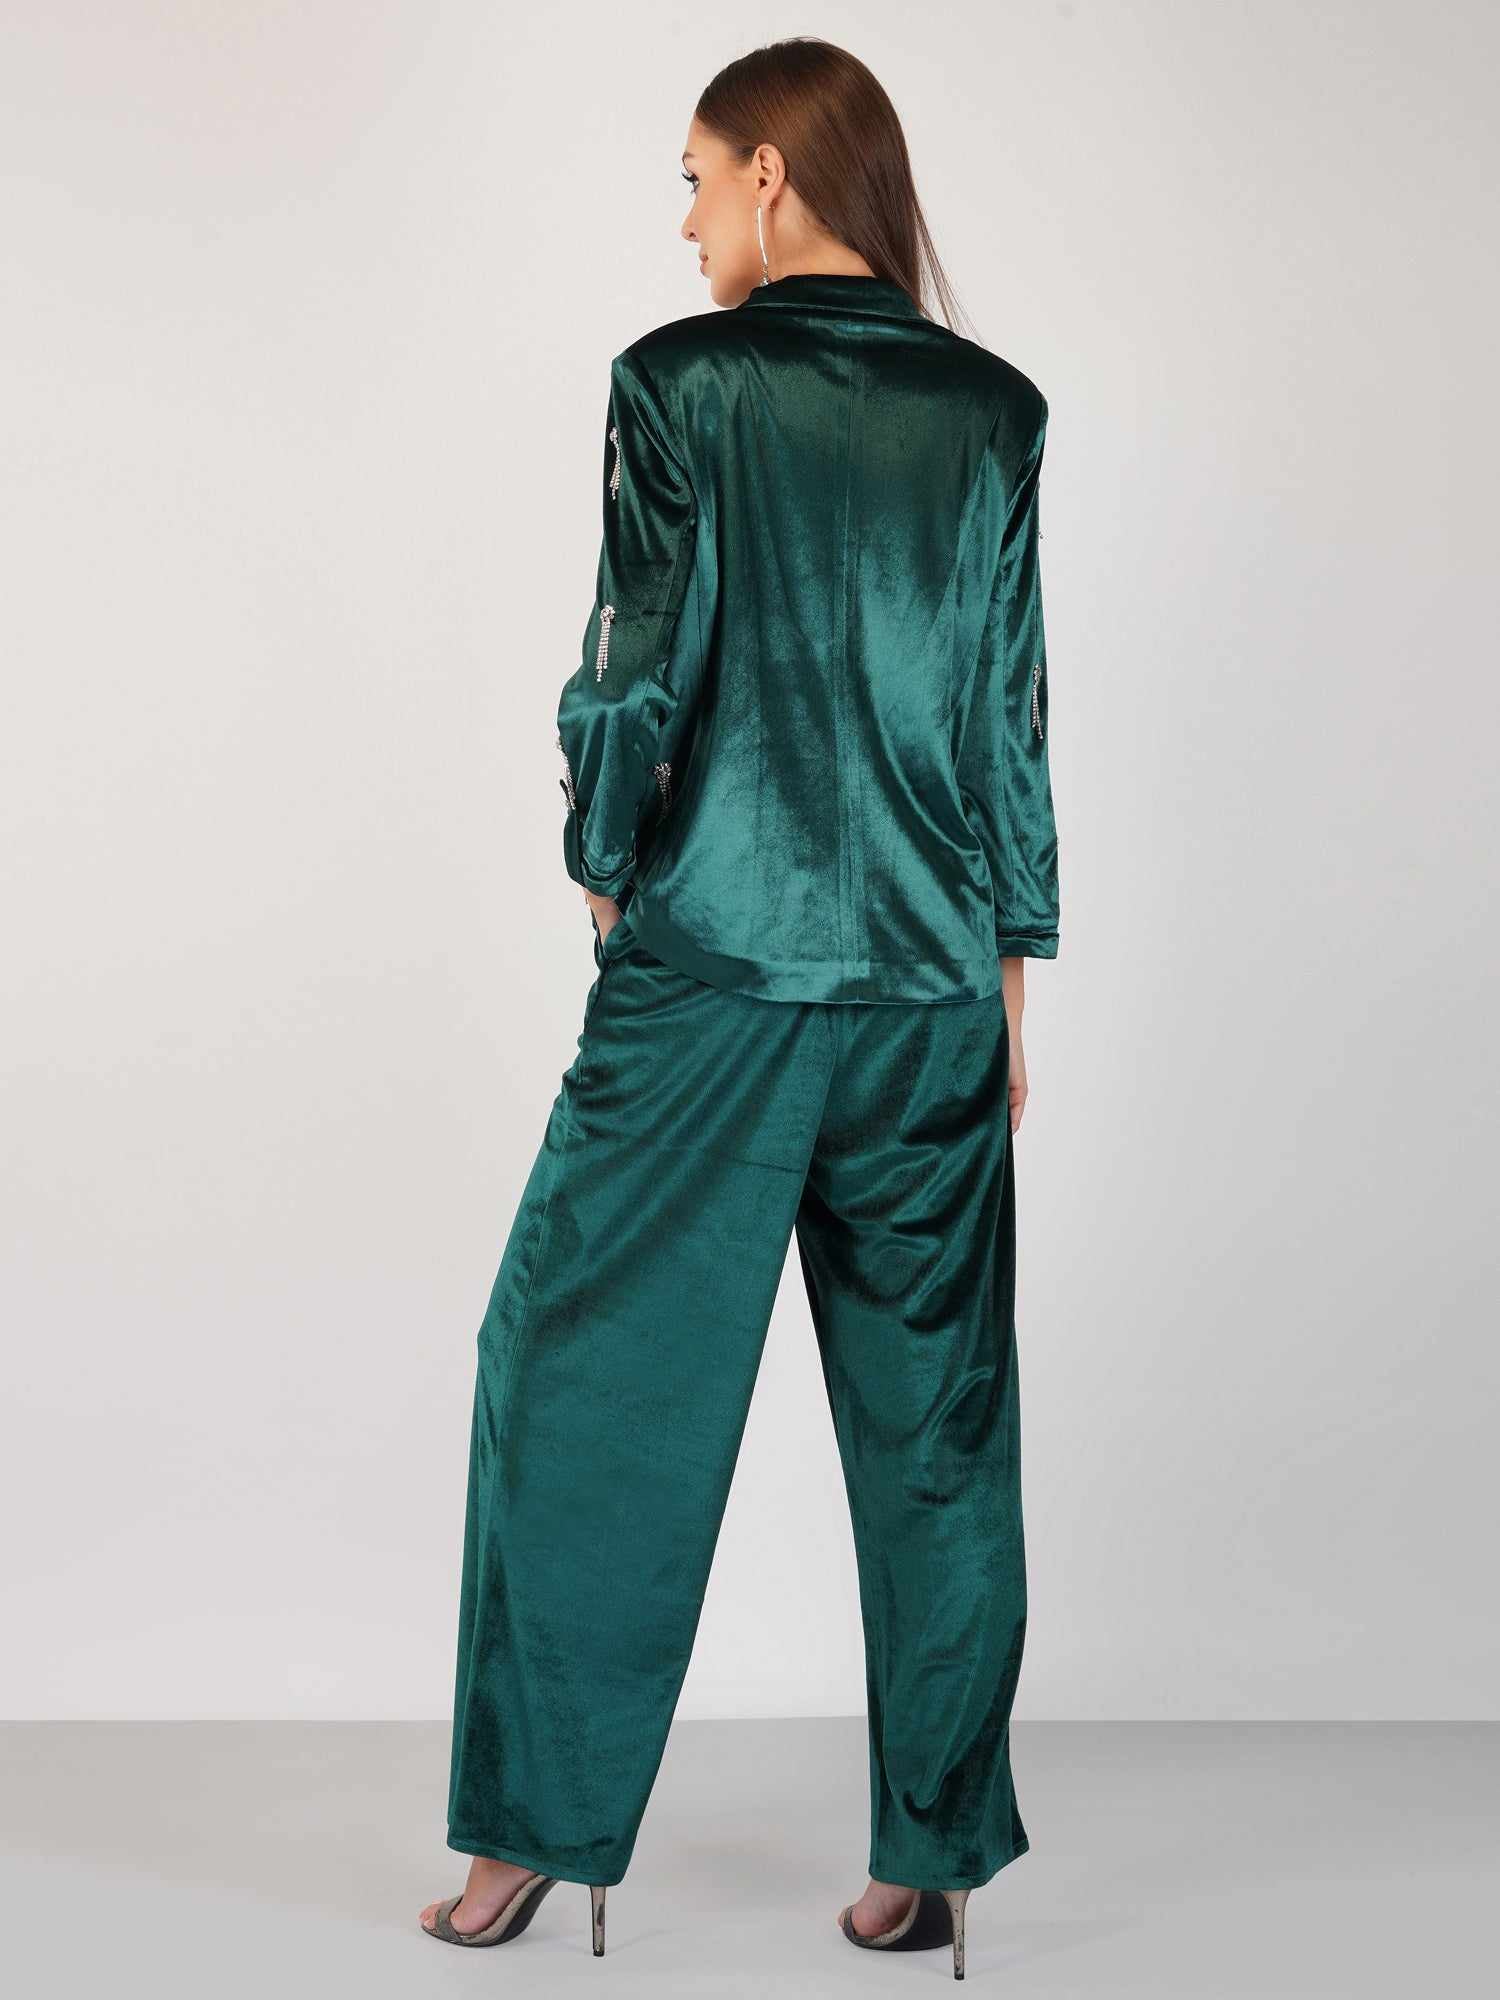 green velour high waist pant